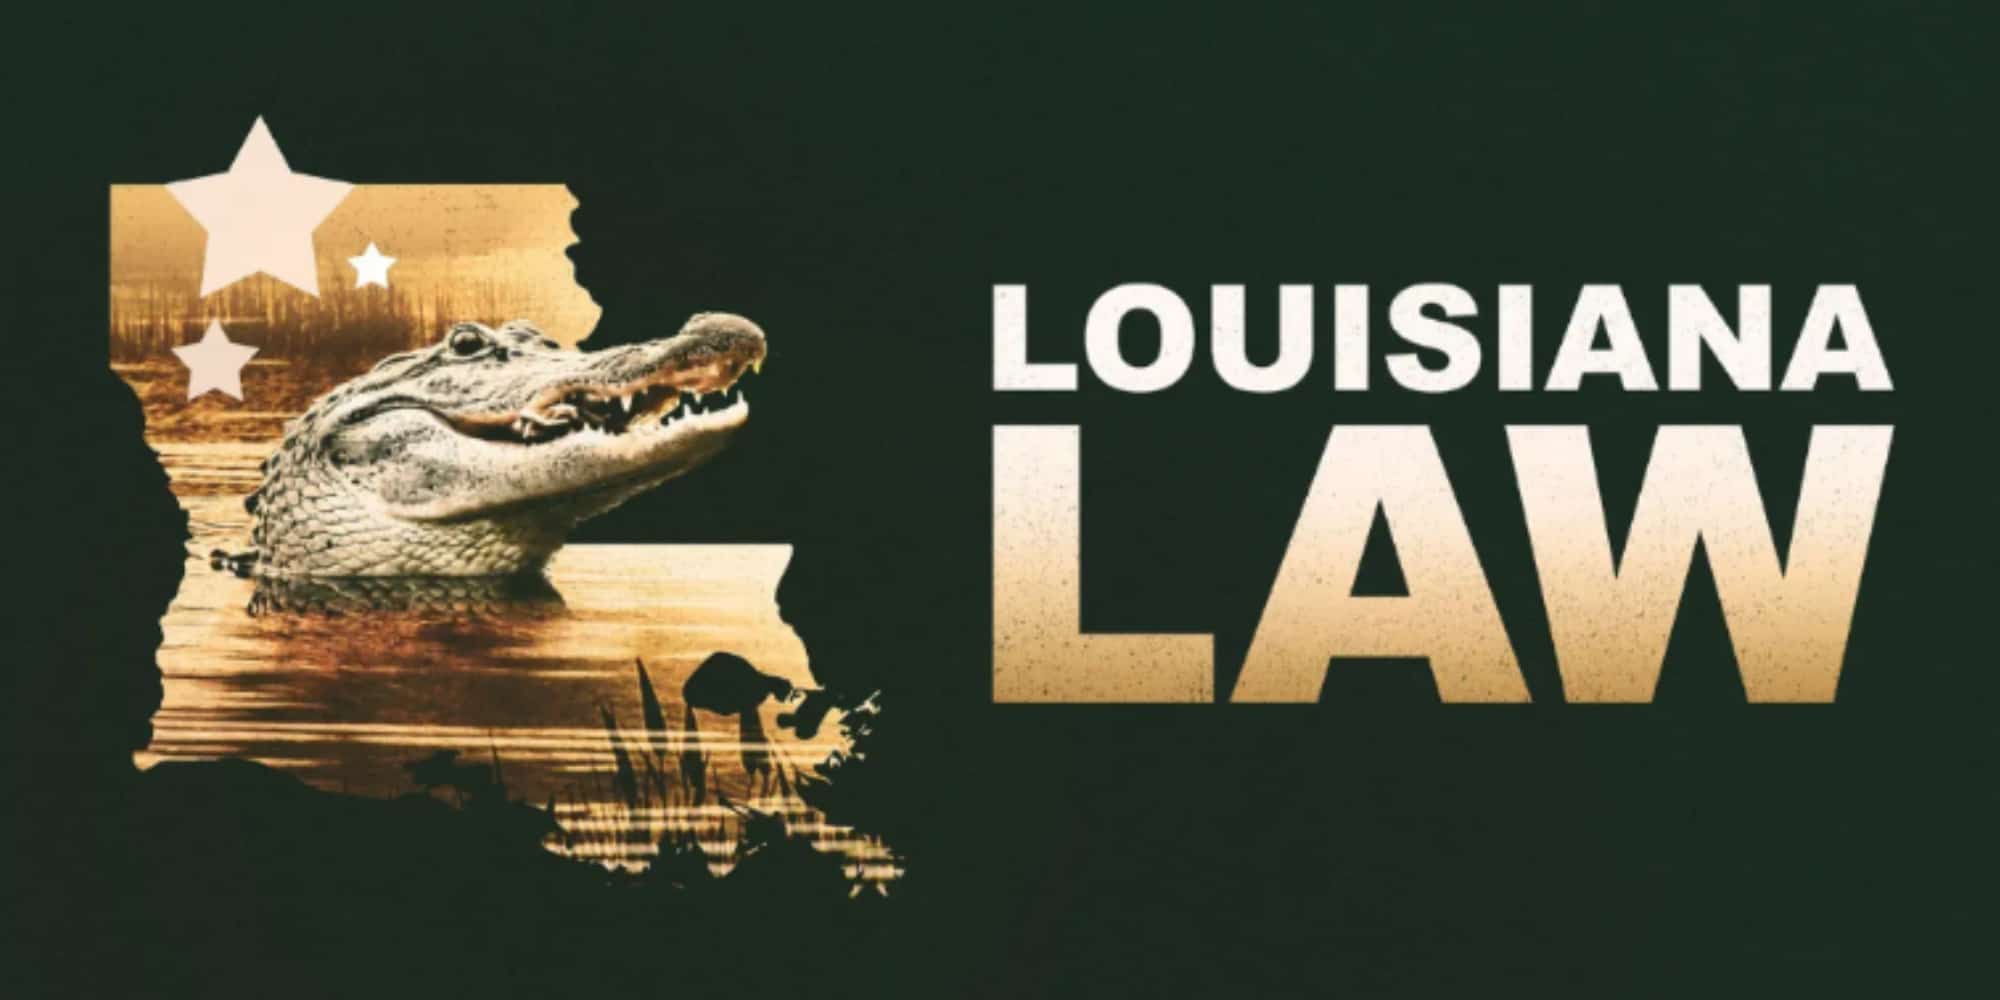 Louisiana Law Season 3 Episode 8 Release Date